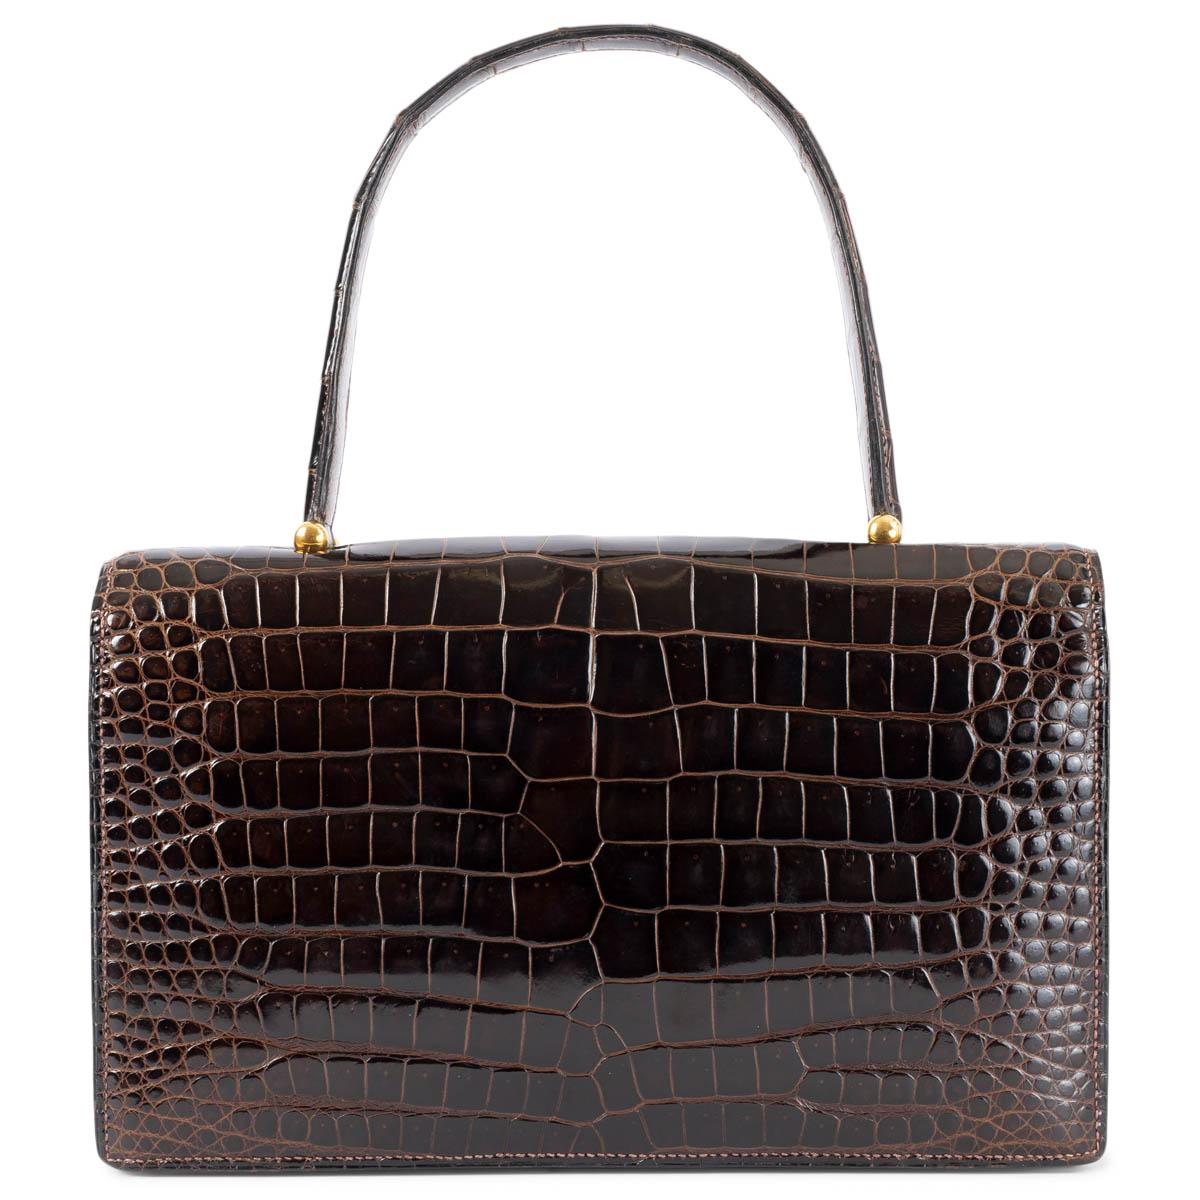 100% authentische Hermès Boutonnière Tasche aus Marron Fonce (braun) Krokodil mit goldfarbenen Beschlägen. Das Design verfügt über eine Schlitztasche unter der Klappe und das Innere ist in zwei Fächer mit zwei aufgesetzten Taschen und einer